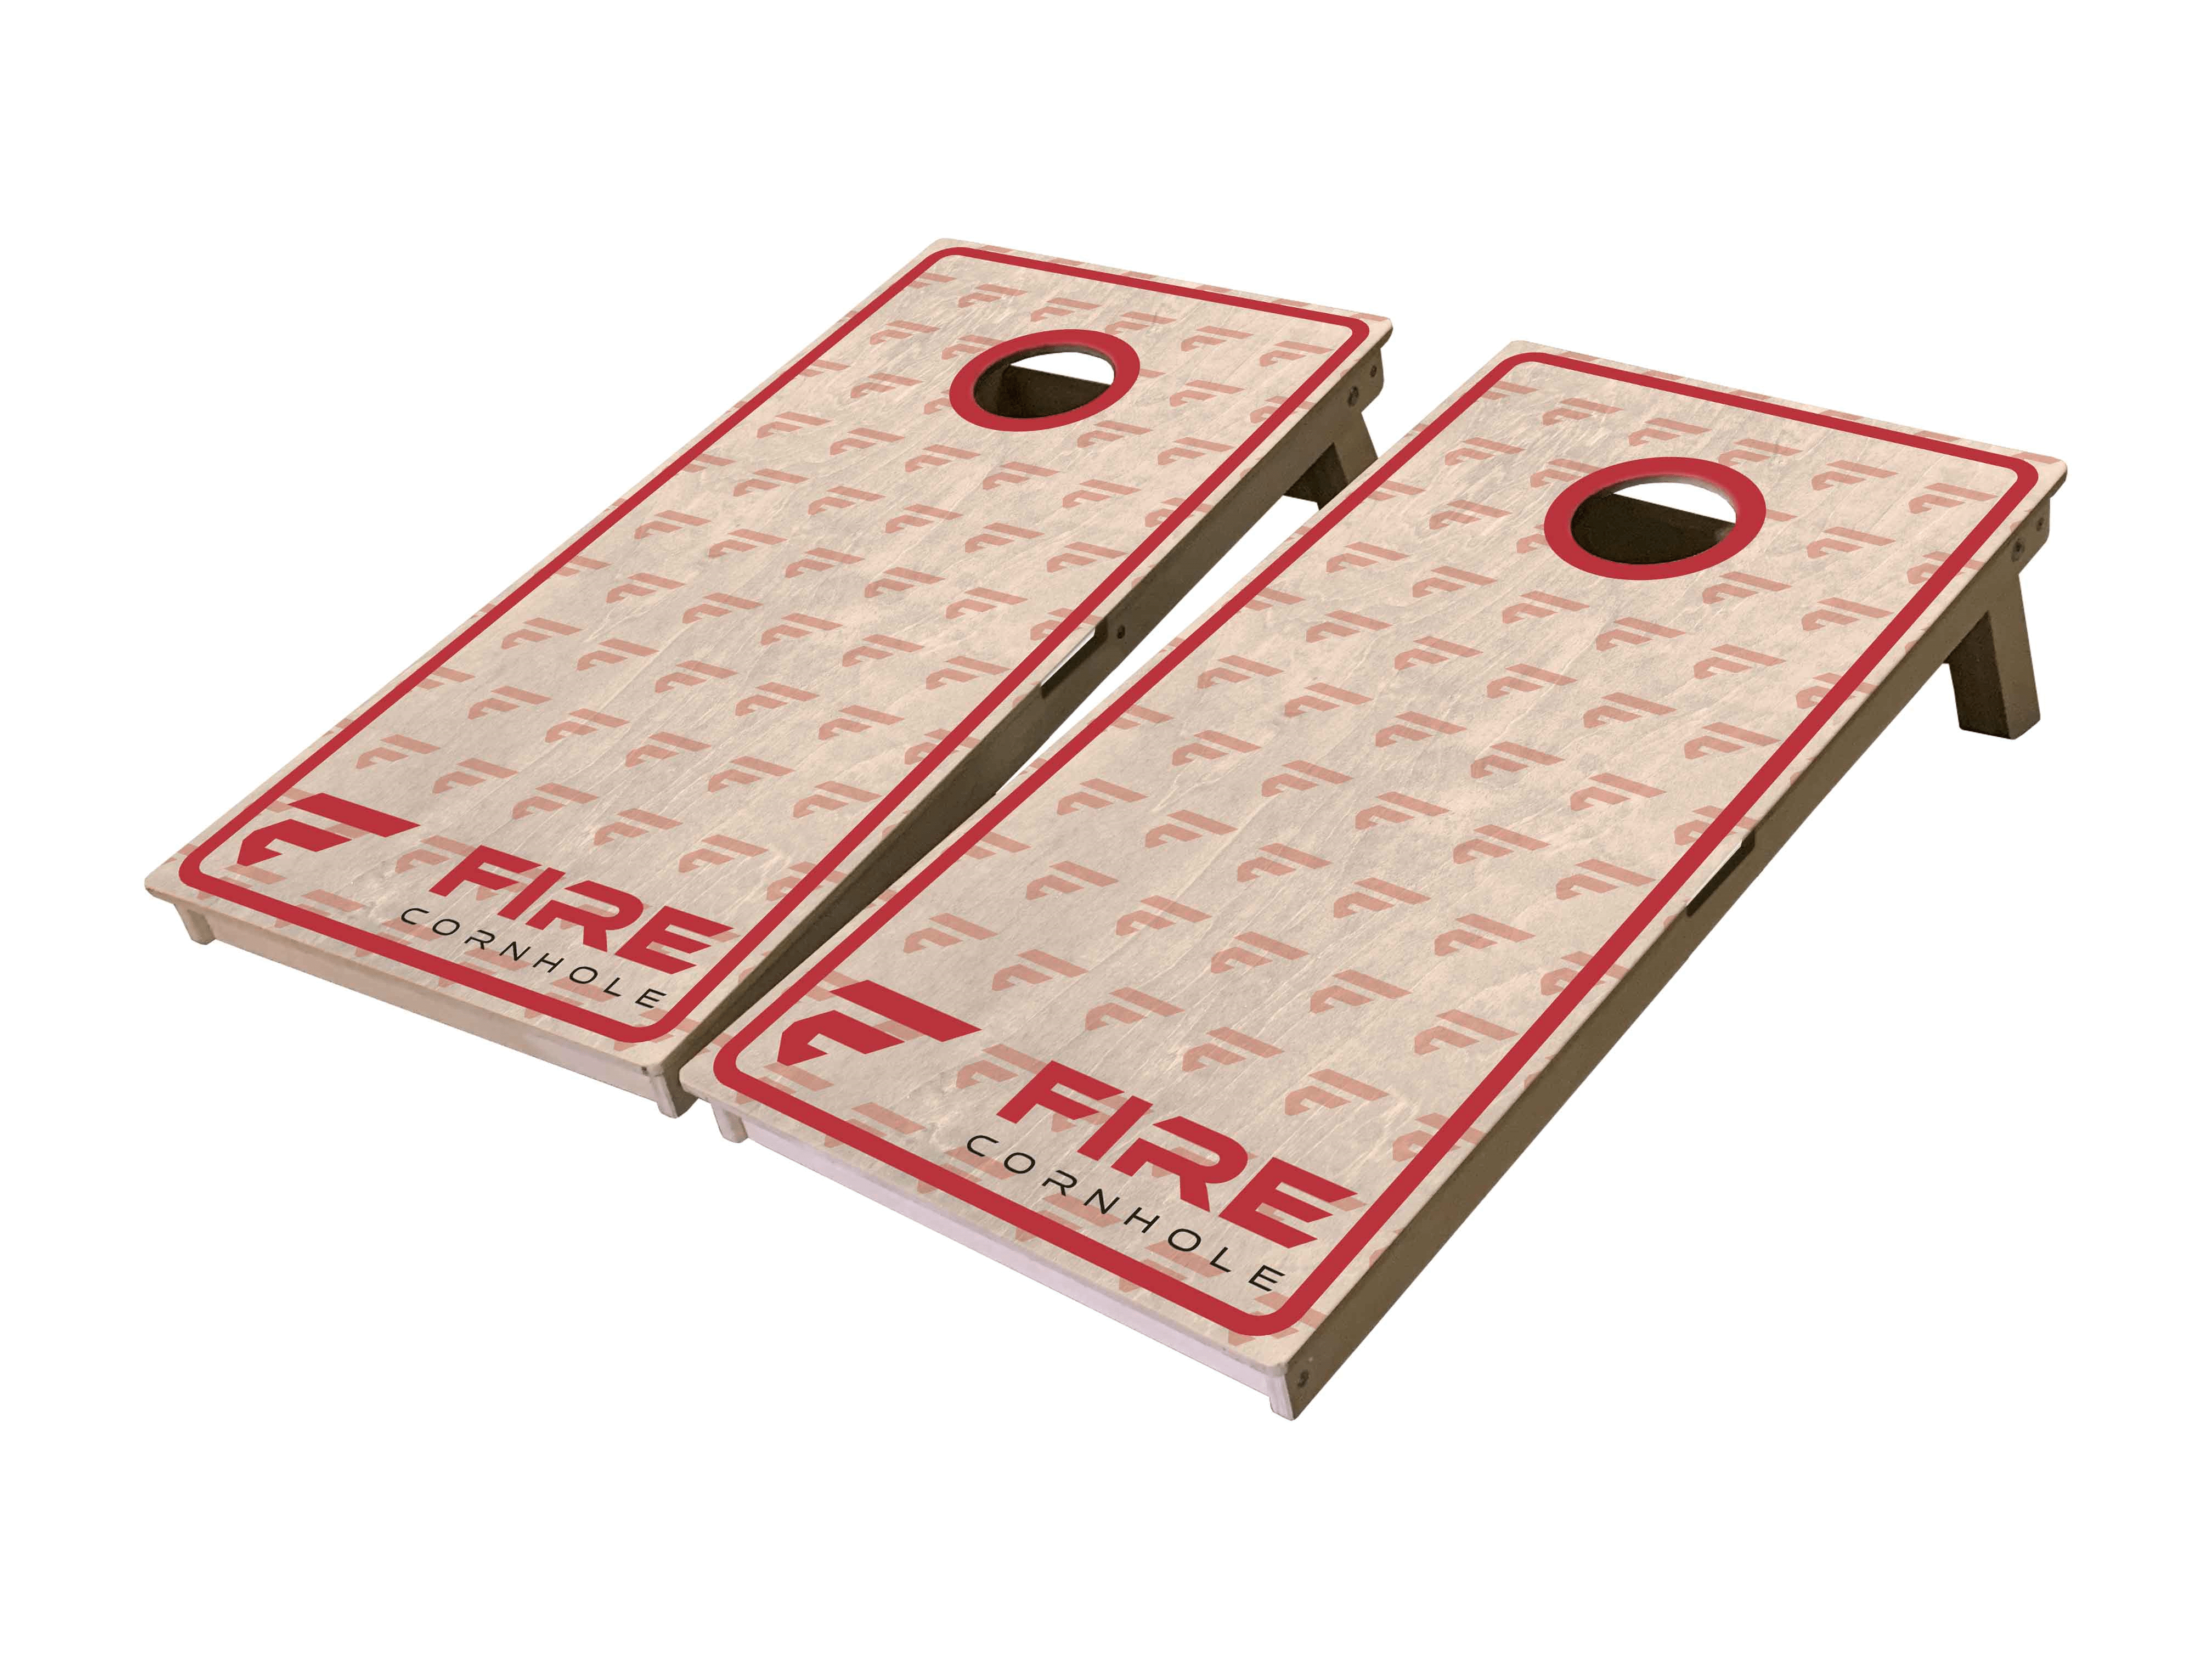 Fire Cornhole boards with "F" logo pattern